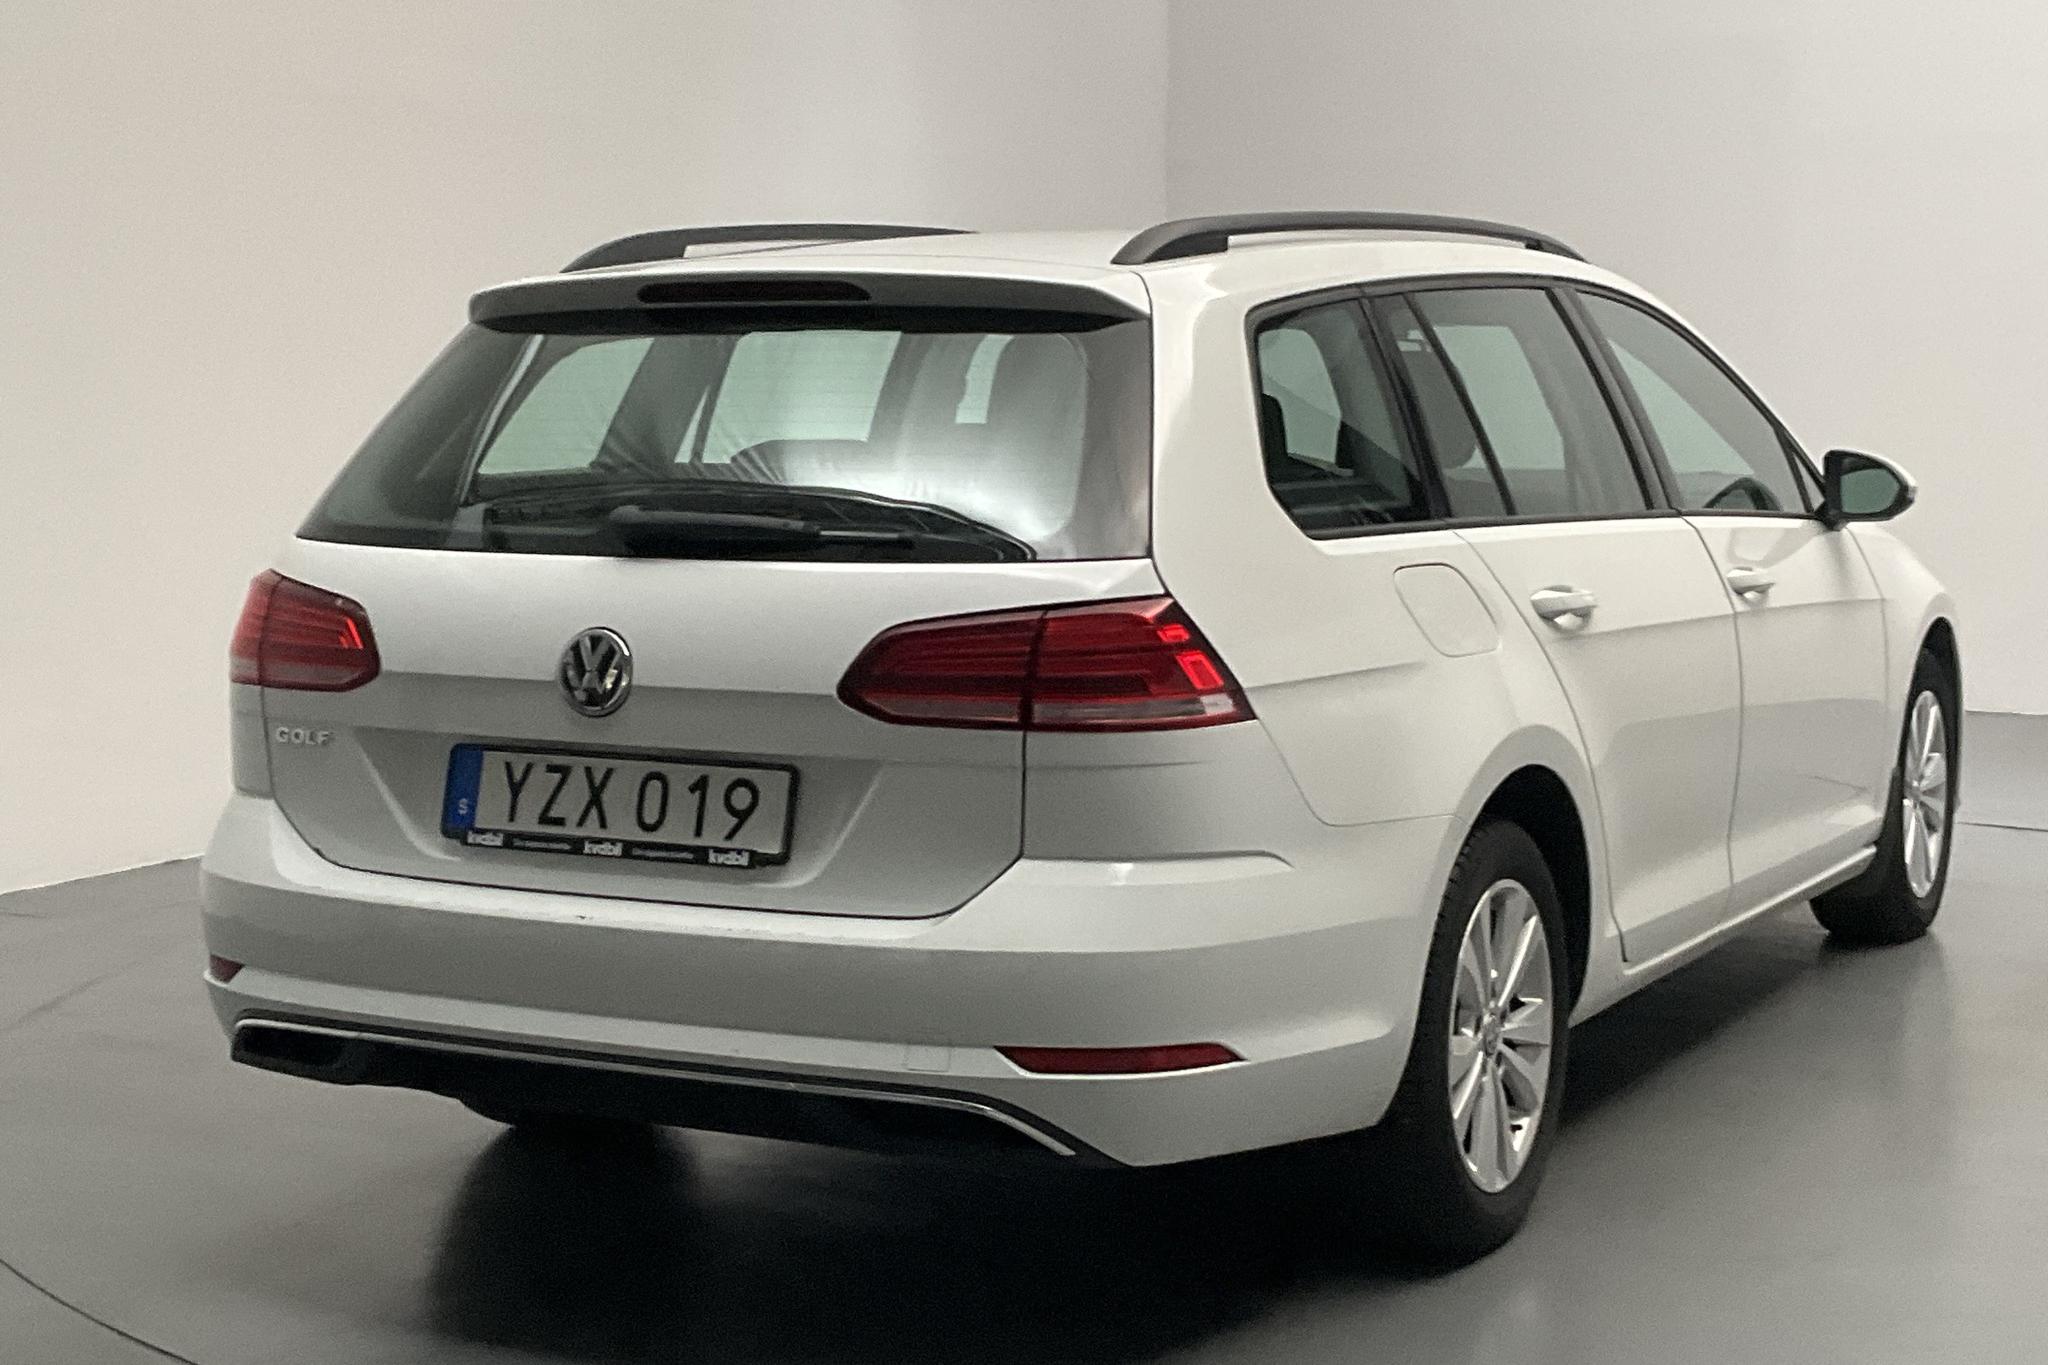 VW Golf VII 1.6 TDI Sportscombi (115hk) - 8 368 mil - Manuell - vit - 2018